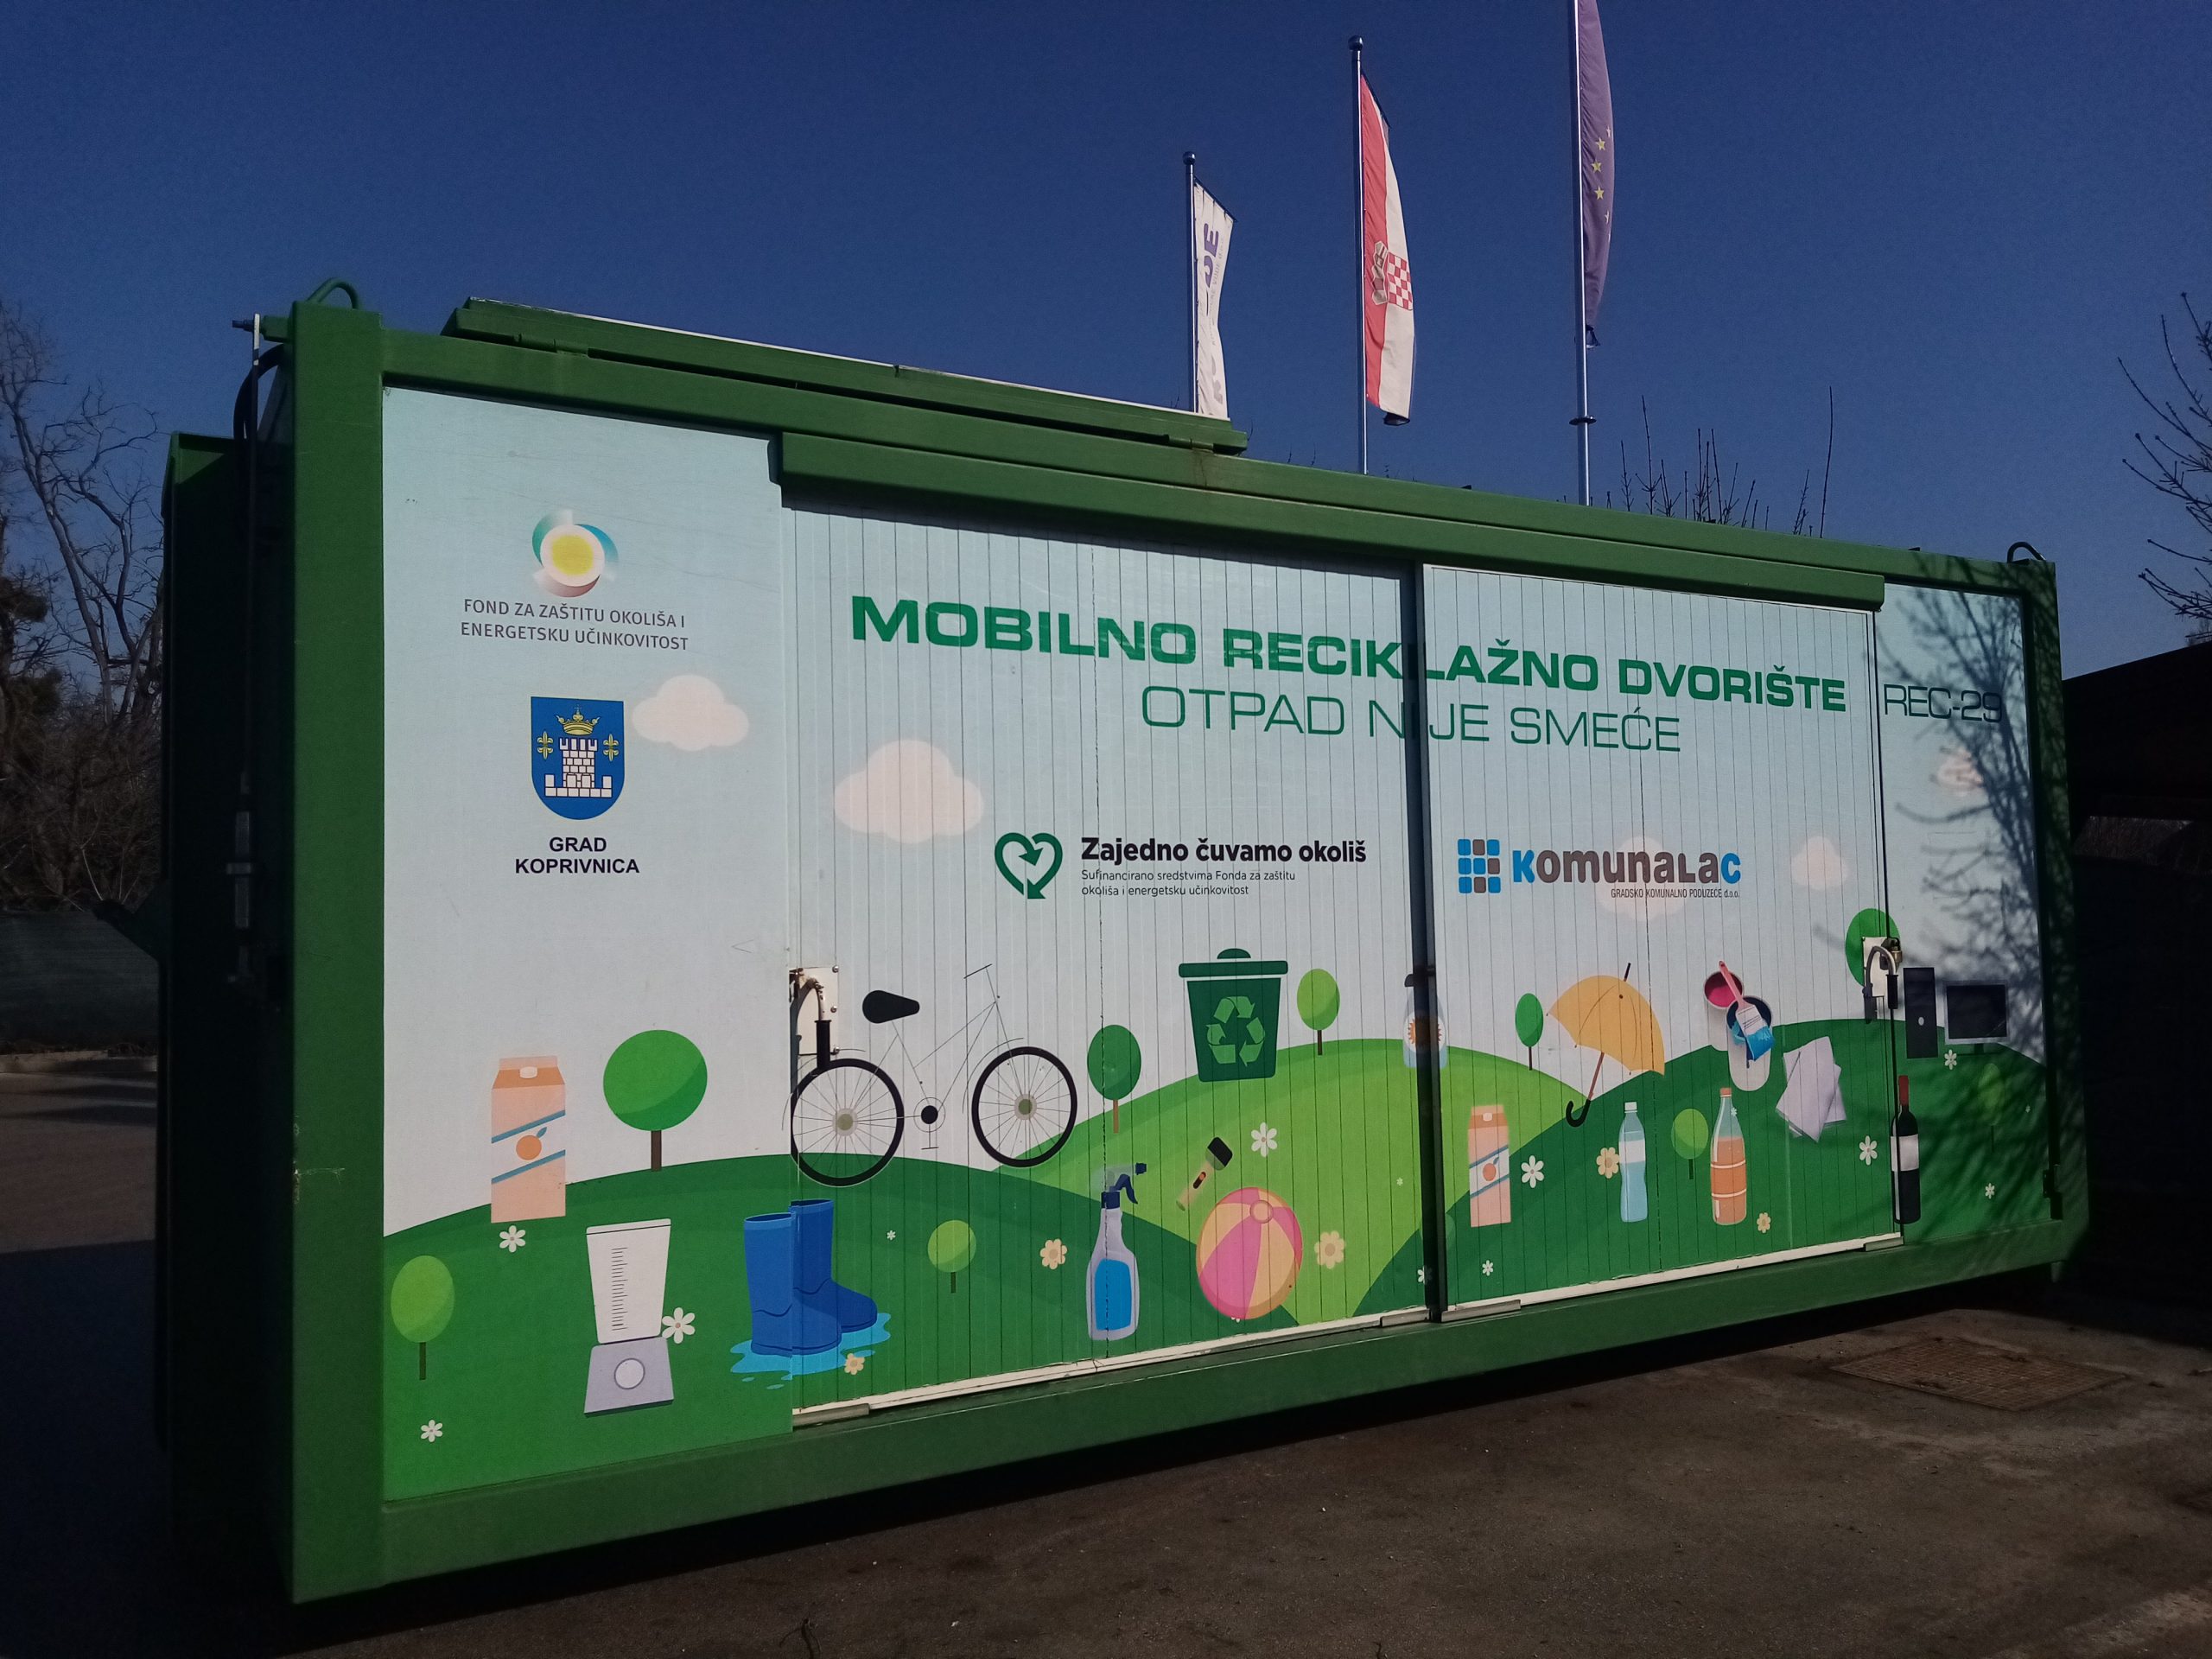 Mobilno reciklažno dvorište u četvrtak, 6. srpnja, nalazit će se u općini Novigrad Podravski